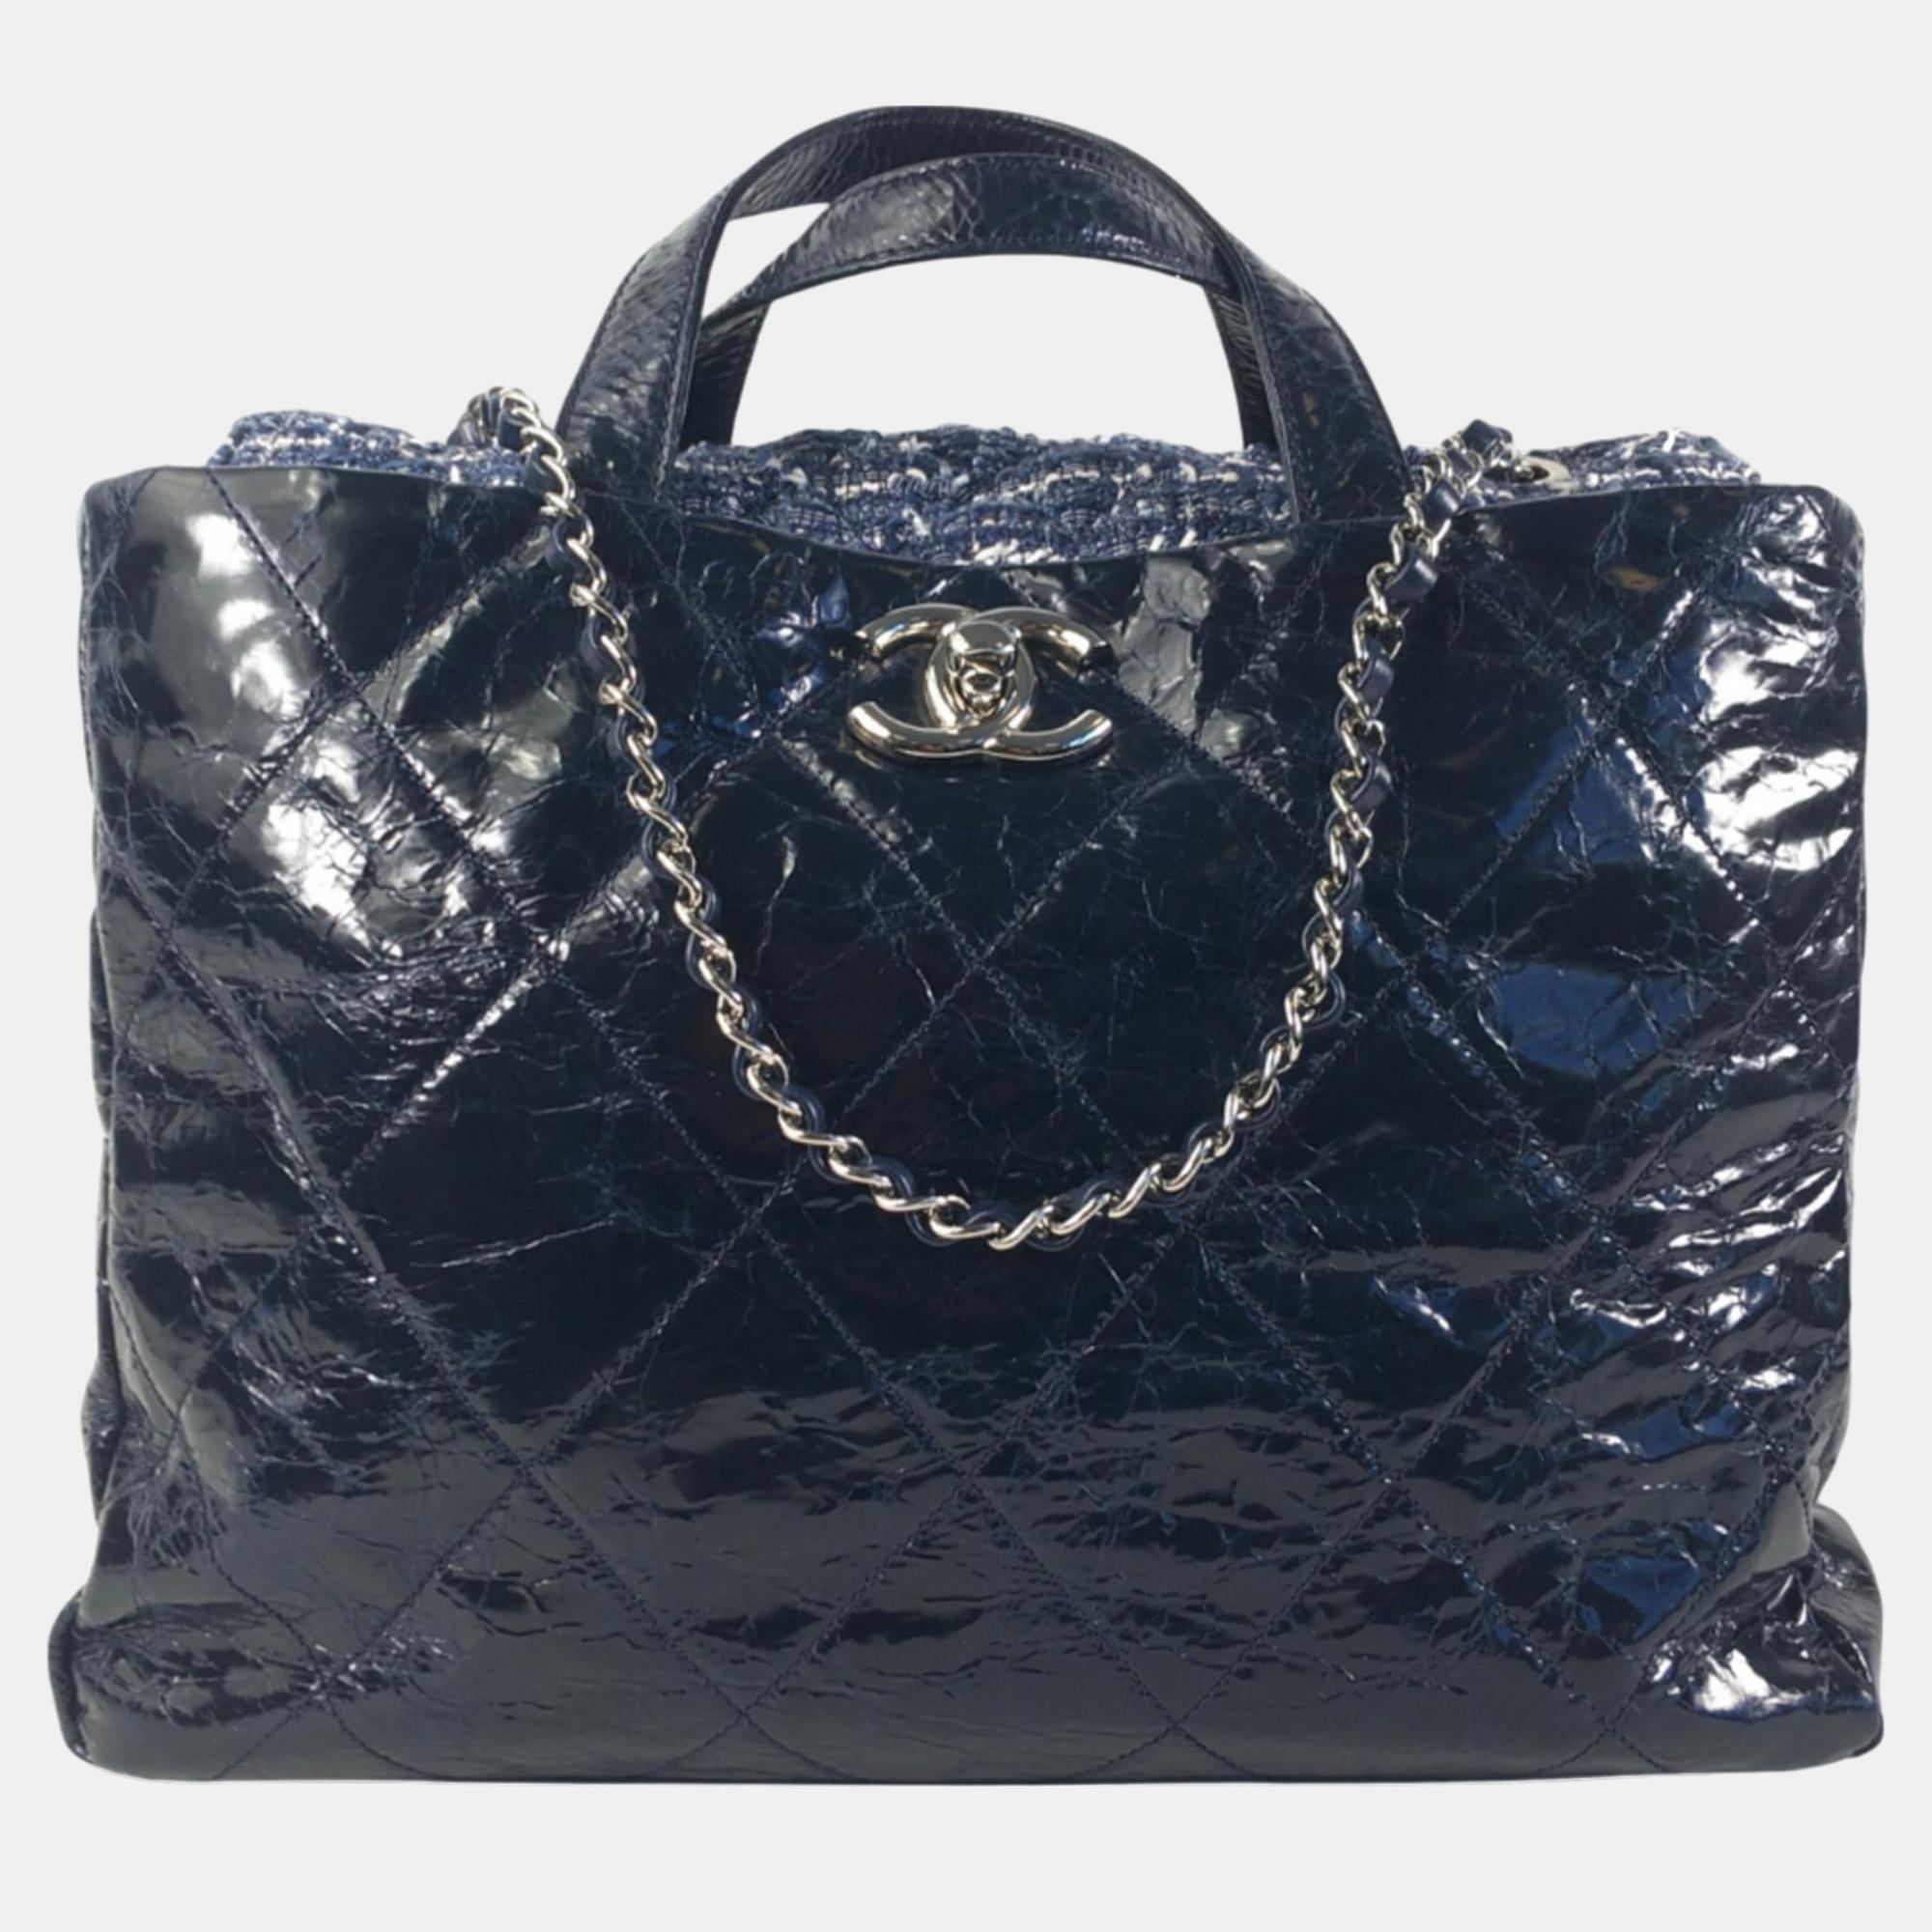 Chanel navy blue glazed calfskin portobello satchel